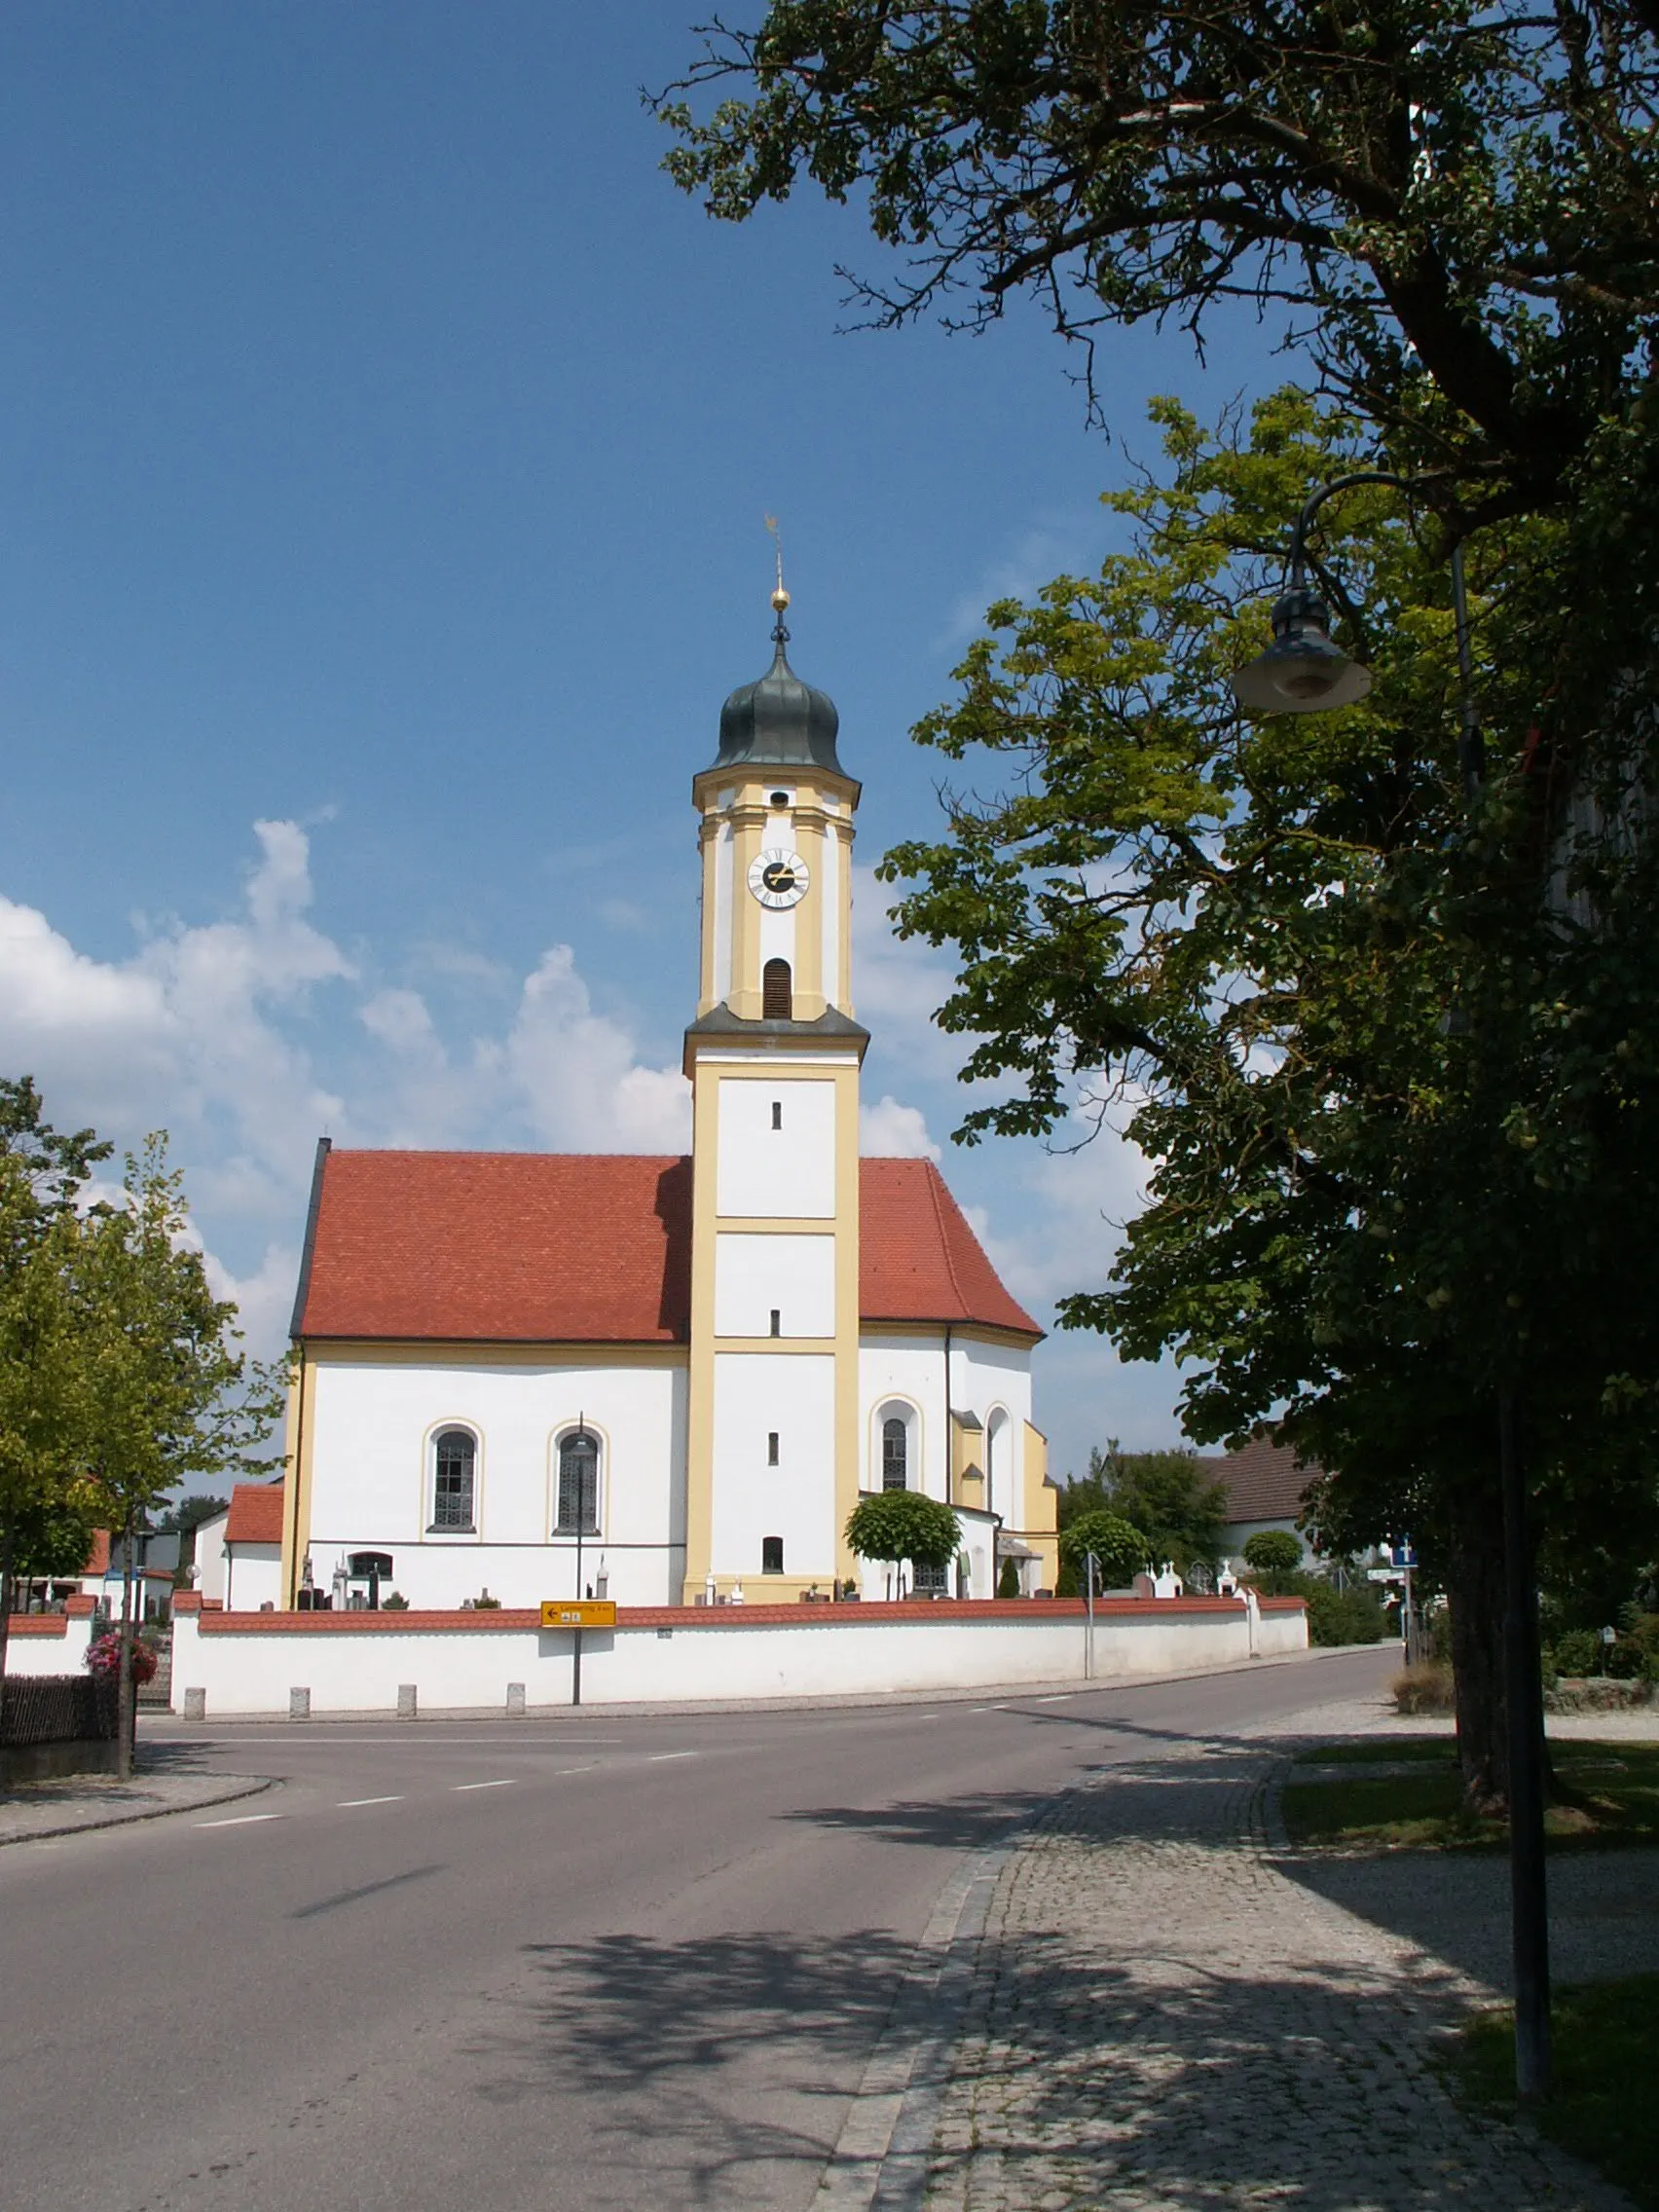 Photo showing: Kirche in Sielenbach, Lkr. Aichach-Friedberg